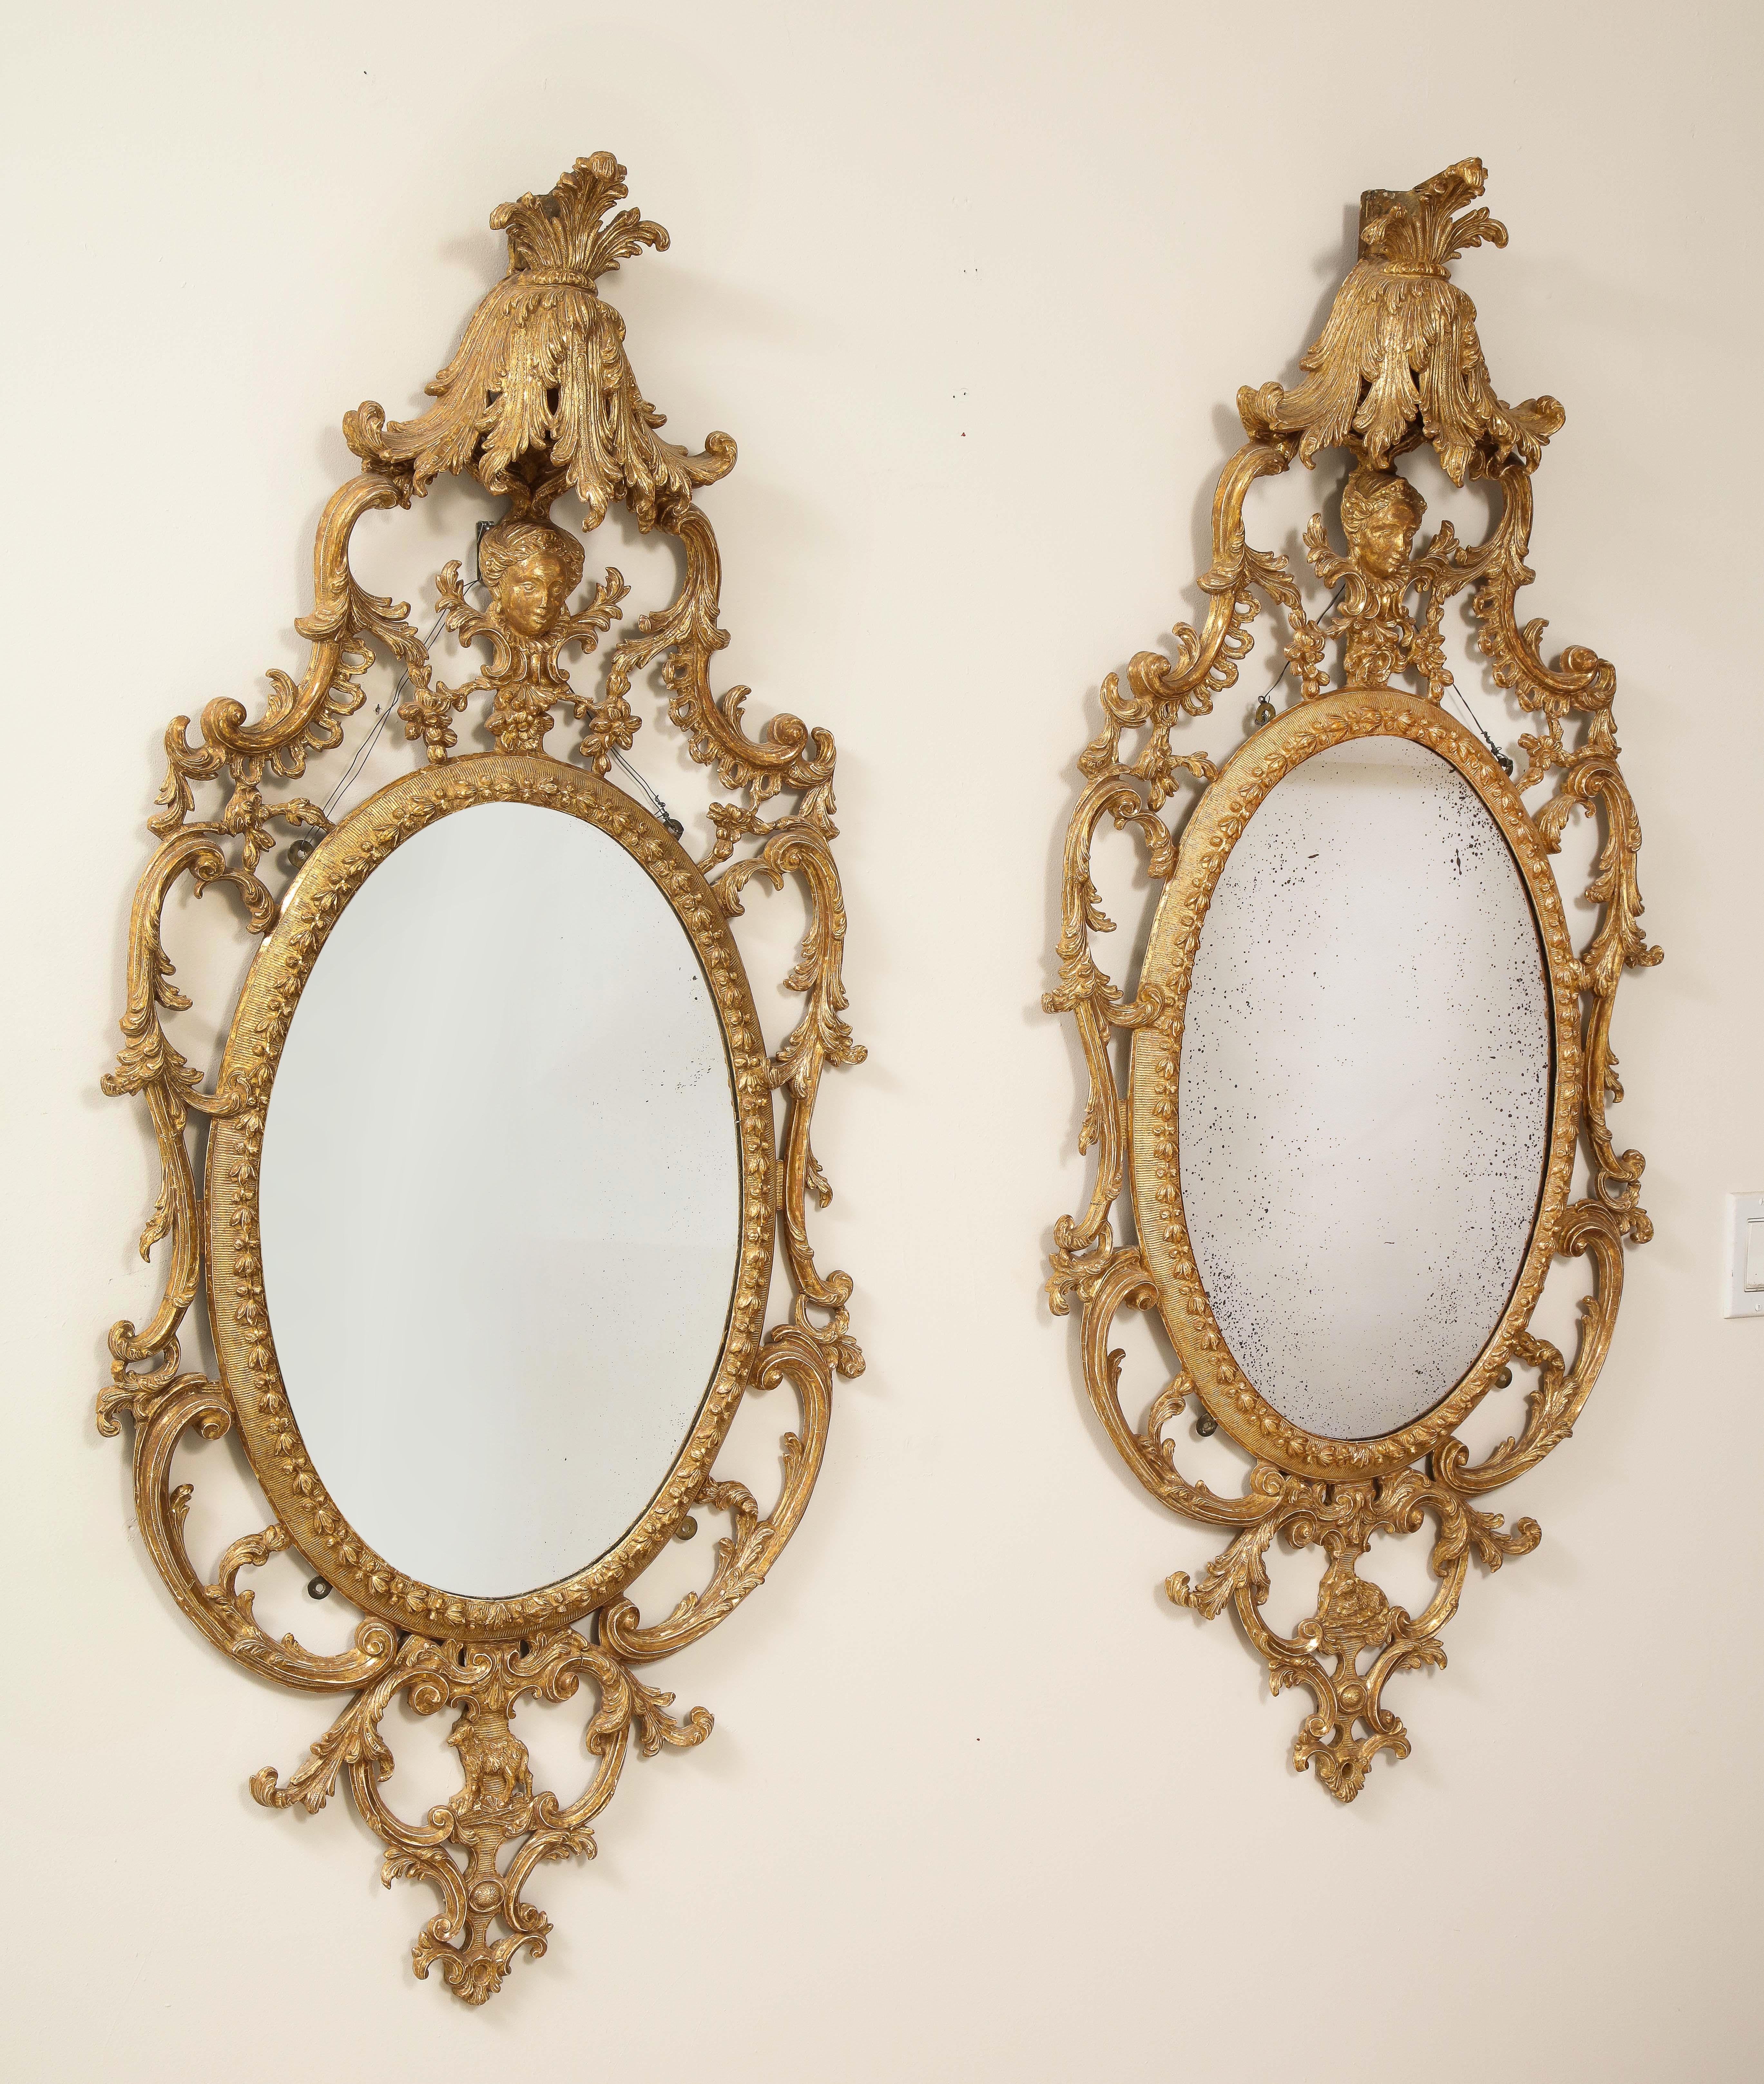 Ein fantastisches und äußerst seltenes Paar von vergoldeten Carton-Pierre- und vergoldeten ovalen Spiegeln aus der Zeit von George III. in der Art von John Linnell. Jeder Spiegel ist wunderschön von Hand geschnitzt, mit viel Liebe zum Detail und